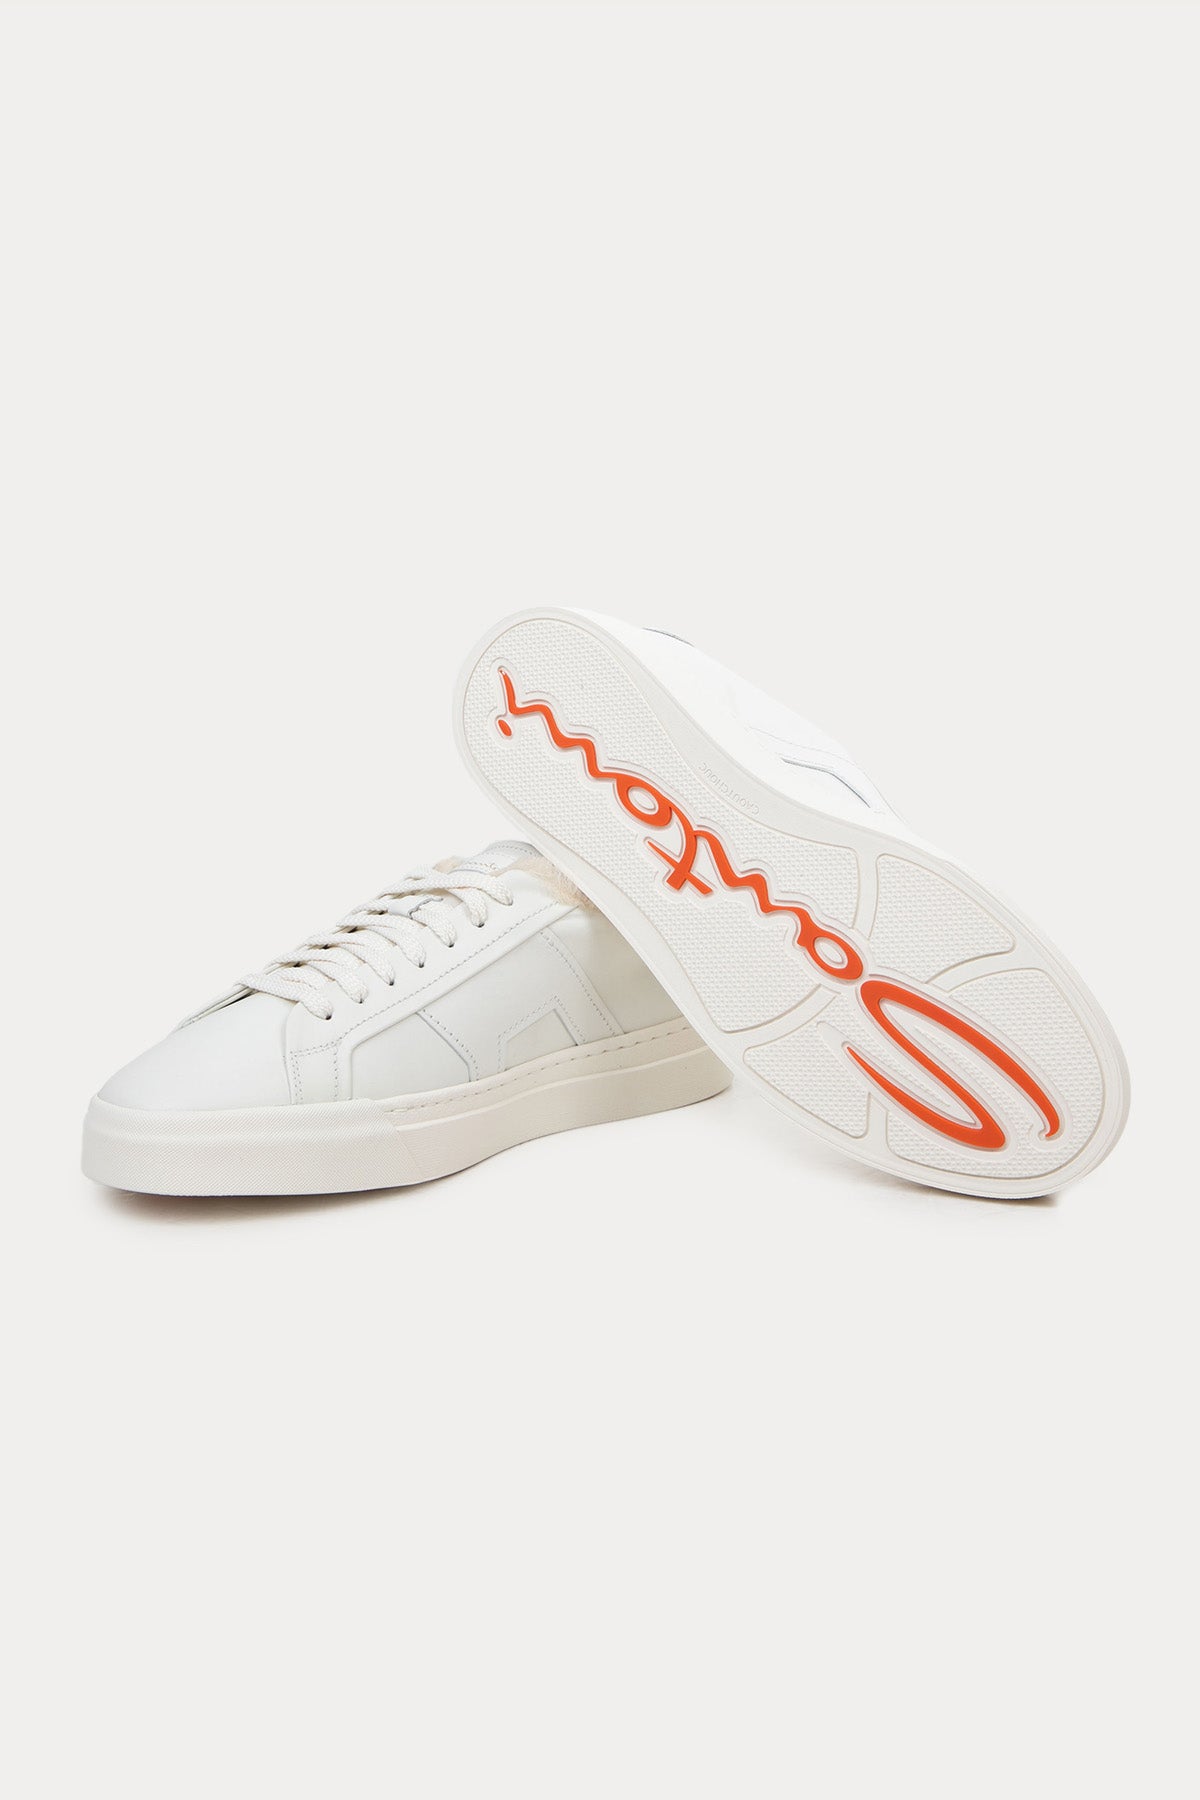 Santoni İçi Kürklü Deri Double Buckle Sneaker Ayakkabı-Libas Trendy Fashion Store